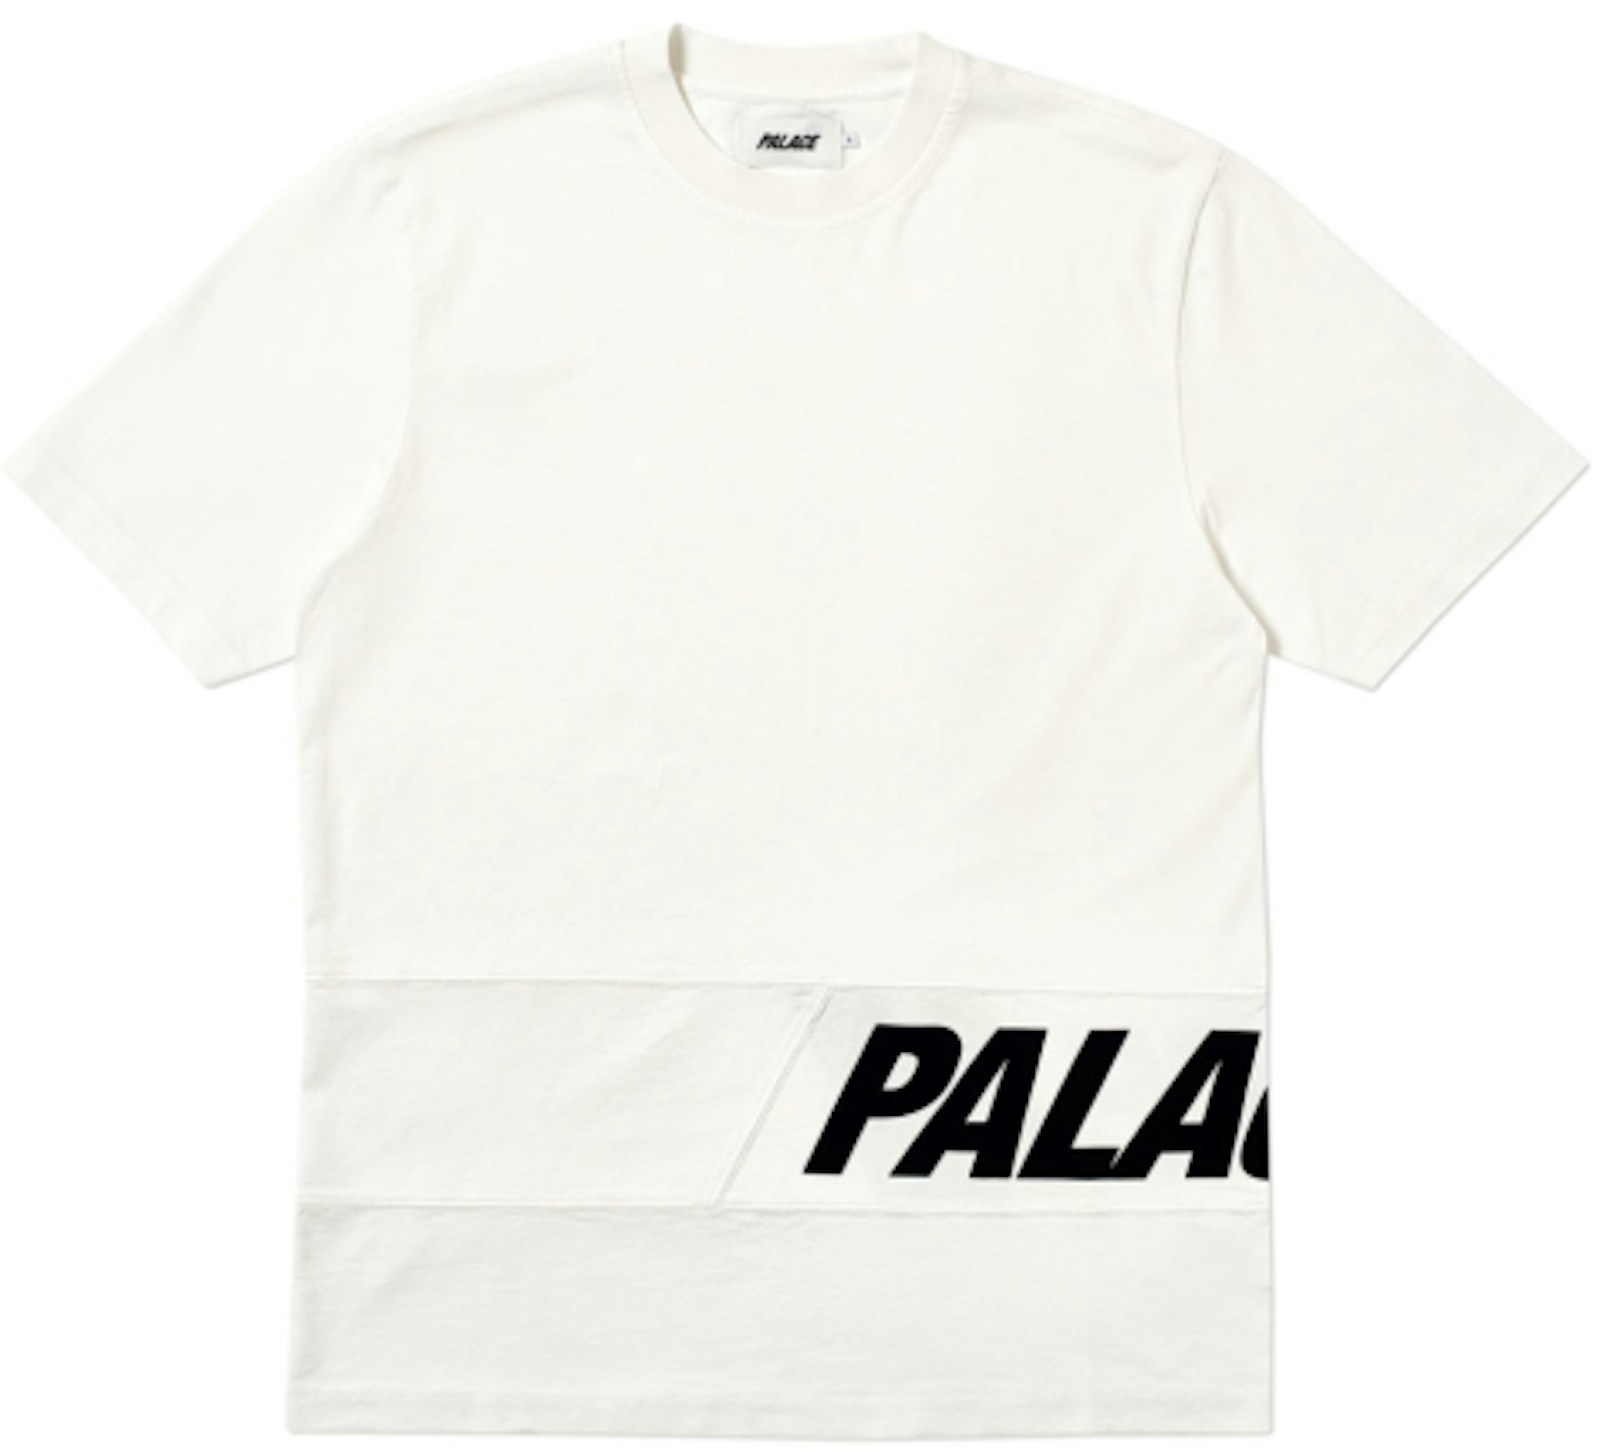 Palace Side T-Shirt White - SS19